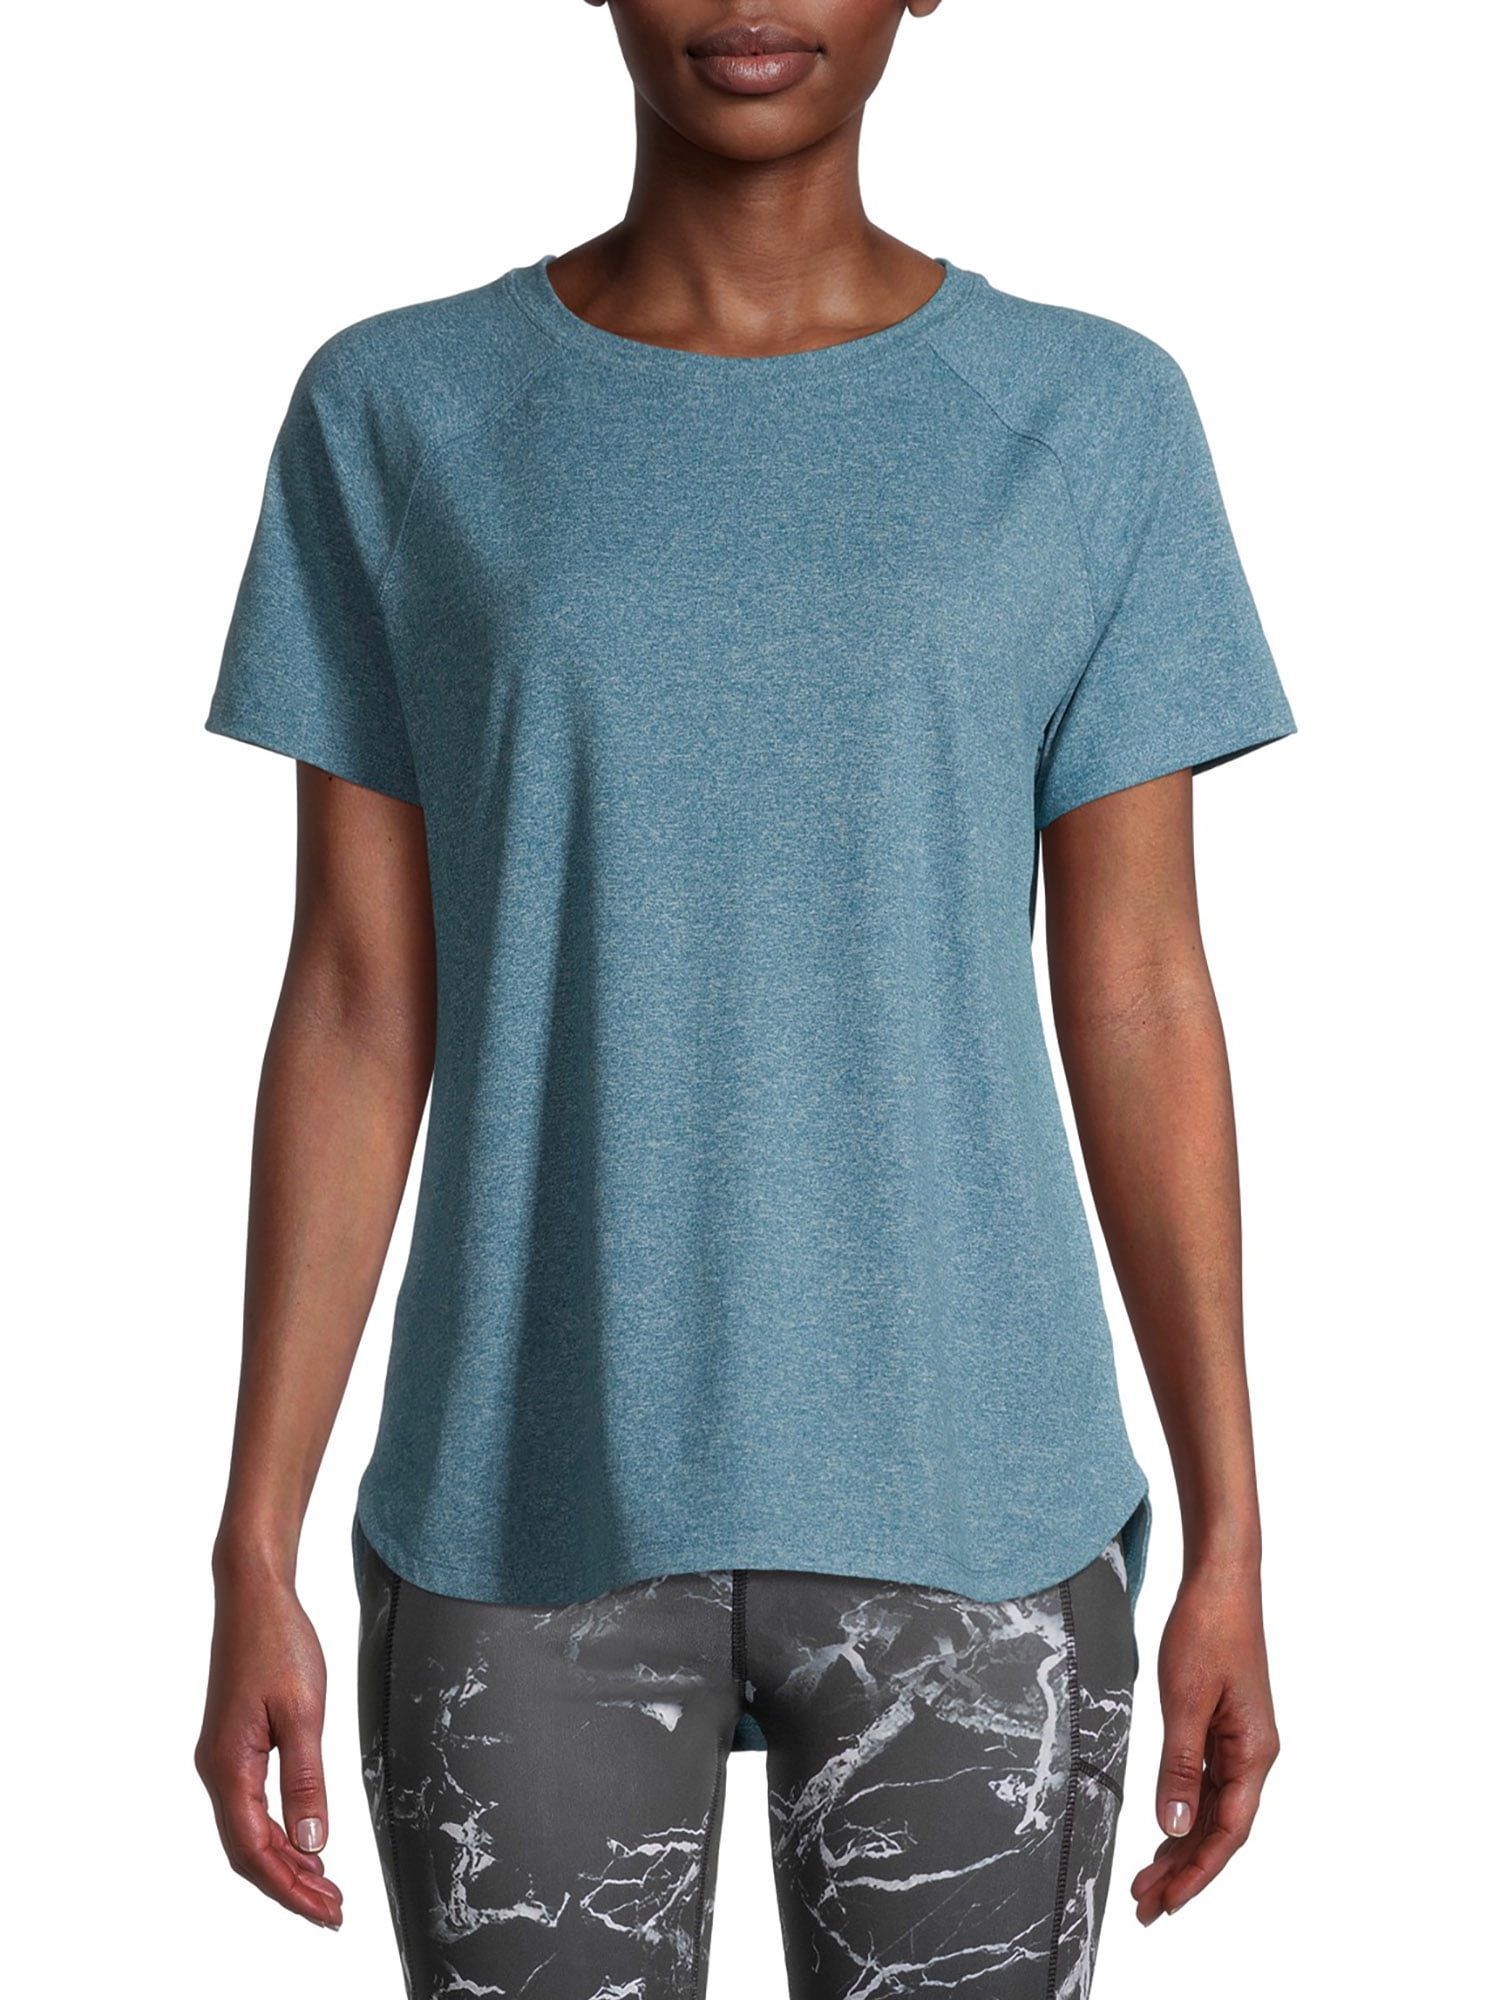 Avia Women's Short Sleeve T-Shirt - Walmart.com